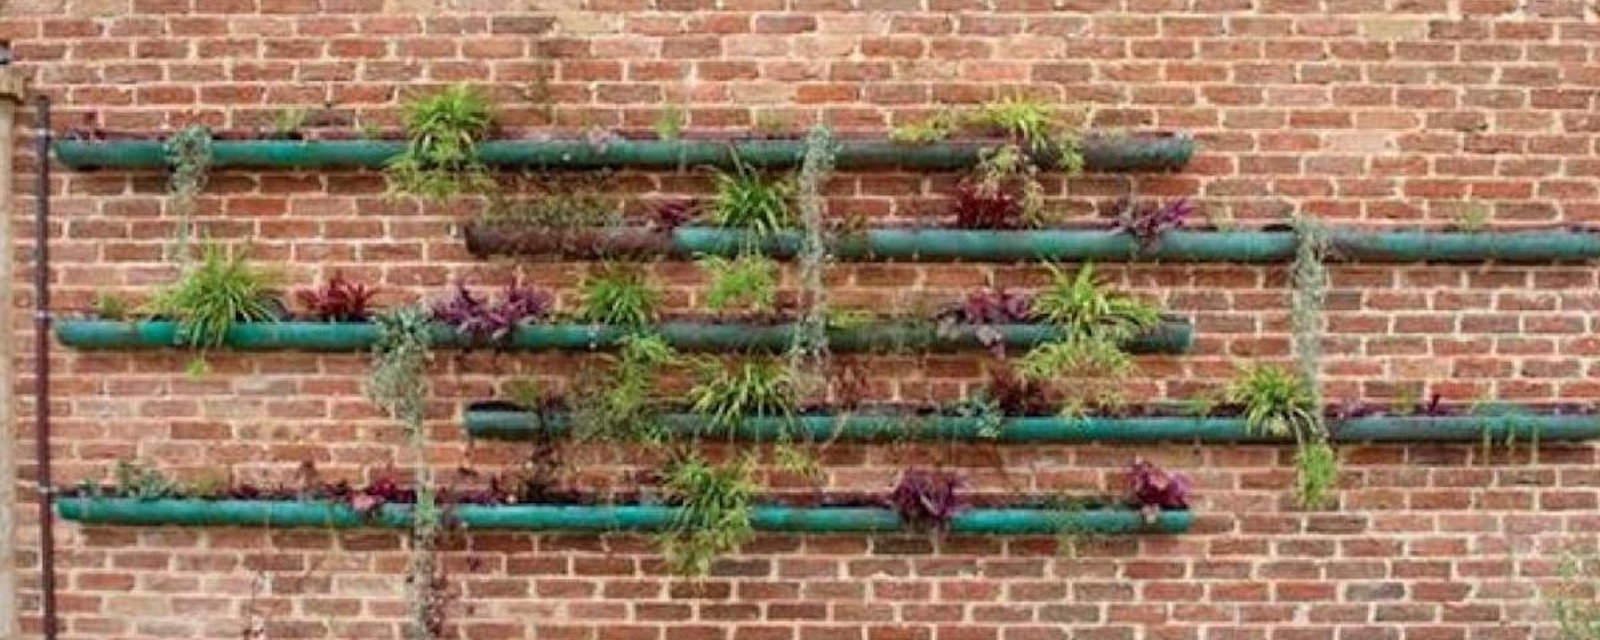 14 façons d'utiliser une clôture pour jardiner